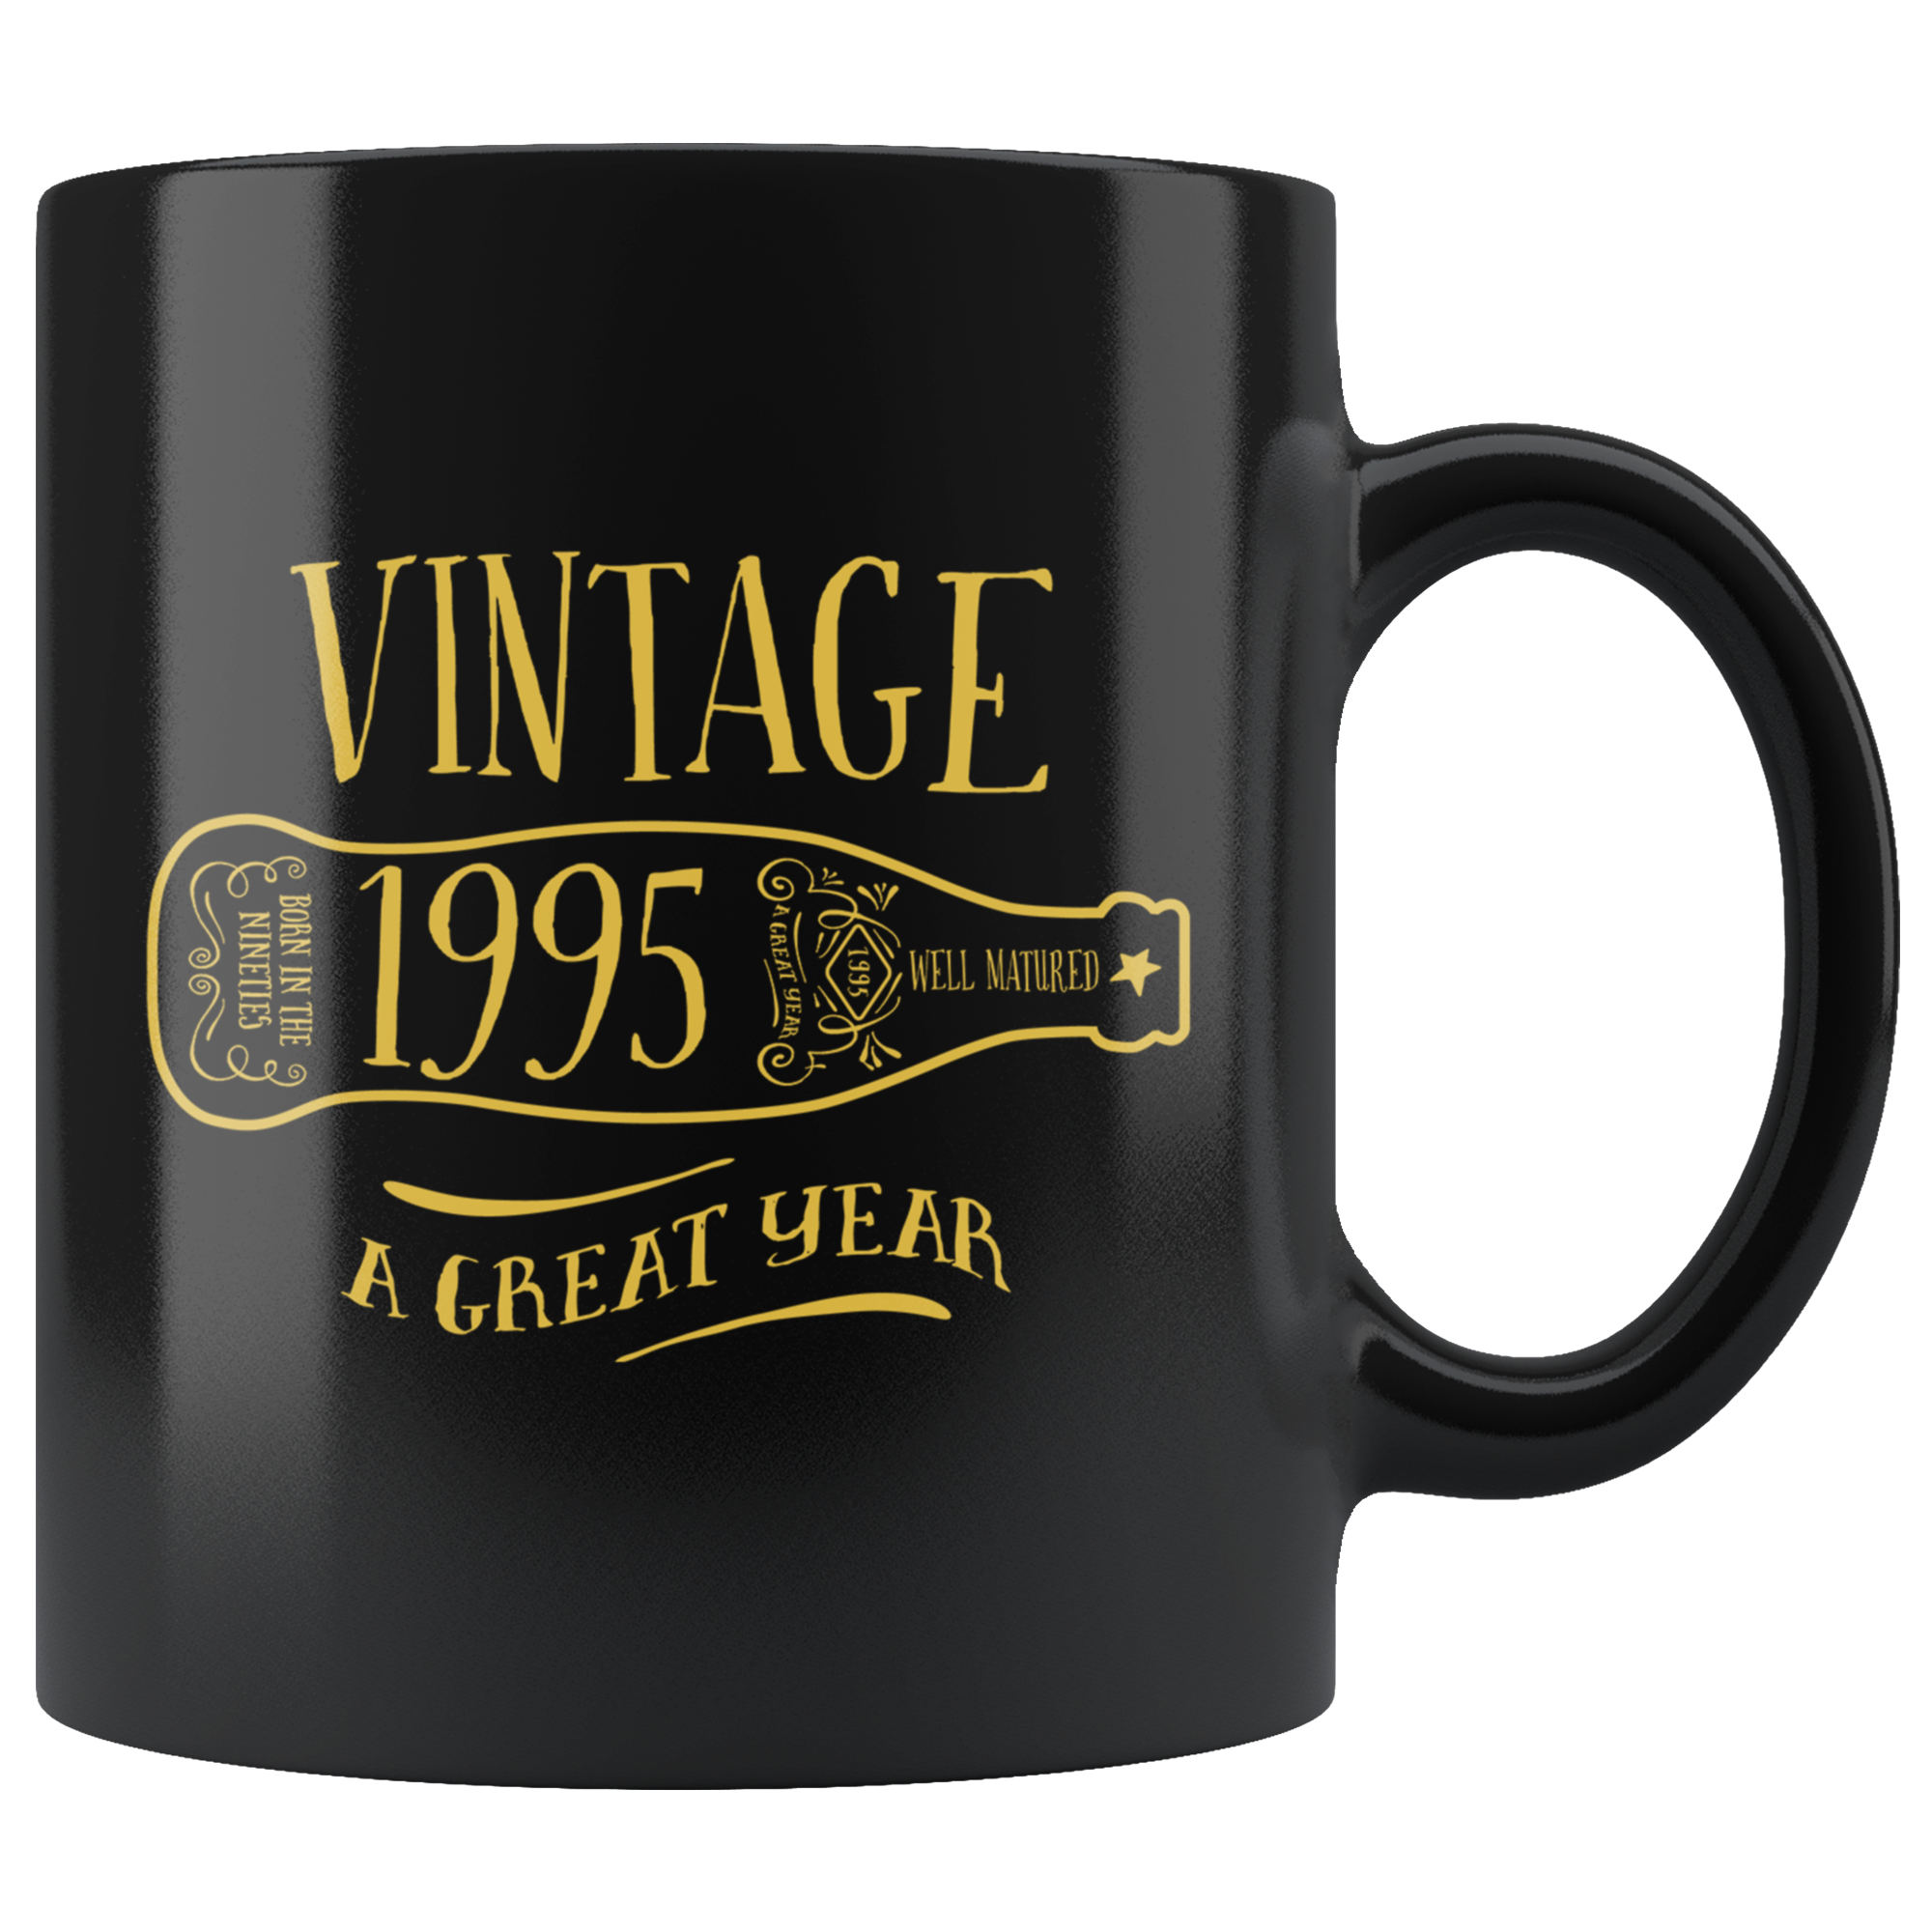 Vintage 1995 - Black Mug